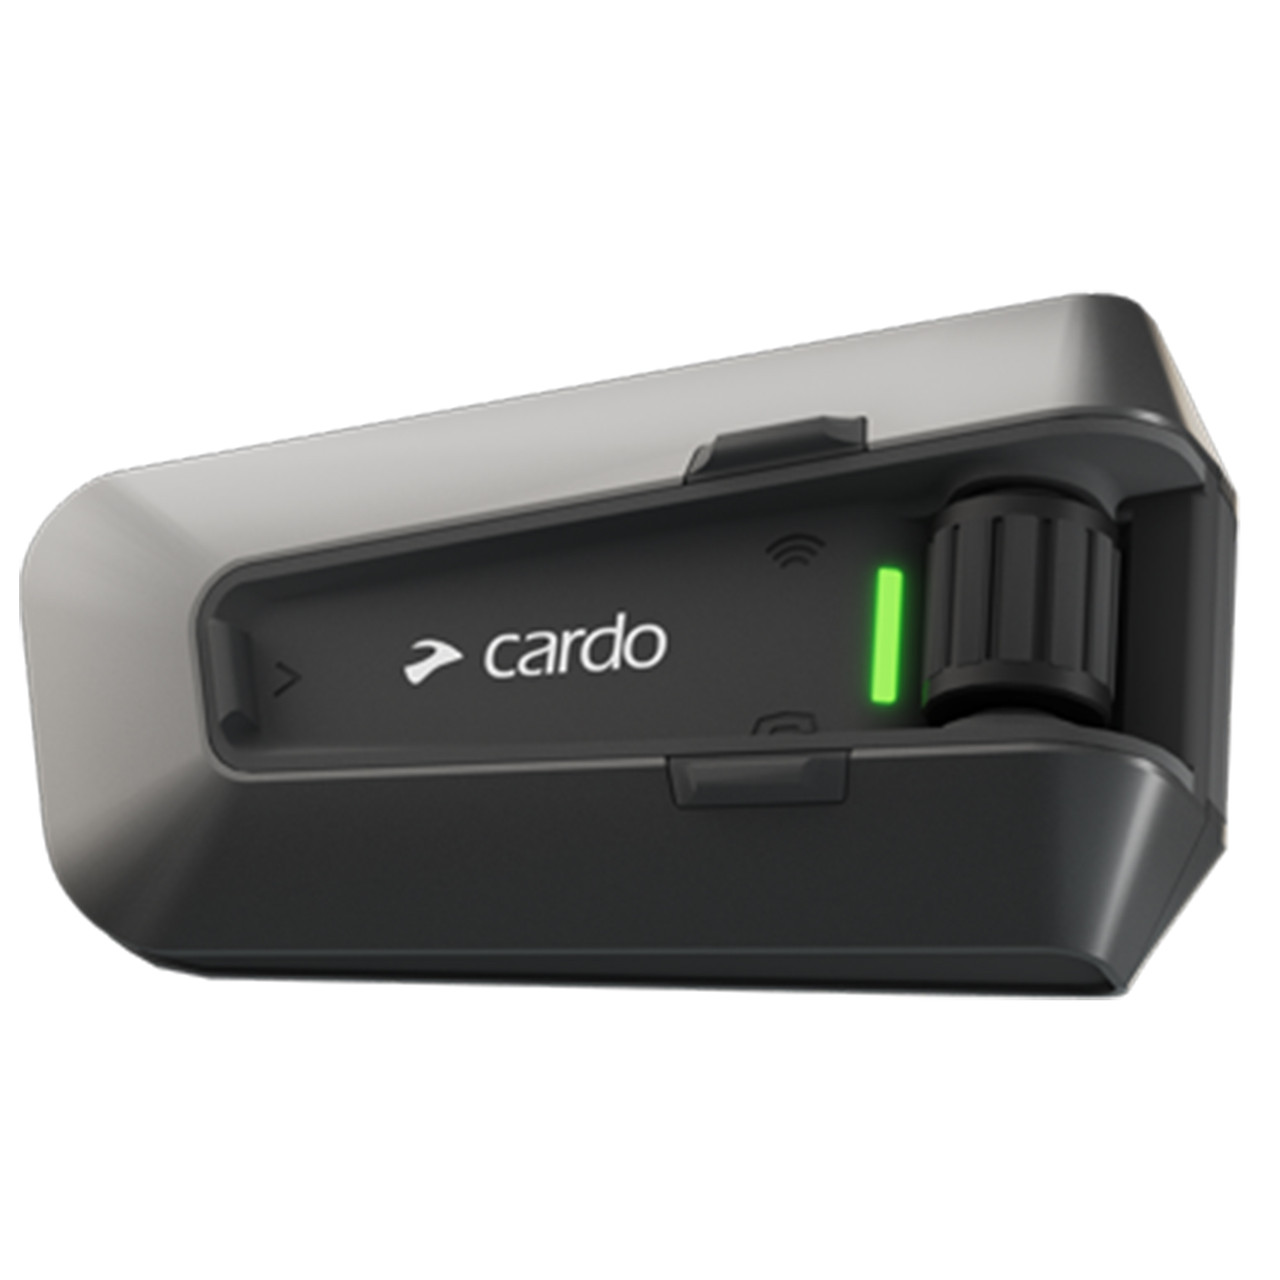 Cardo Spirit Bluetooth Headset Review at SpeedAddicts.com 